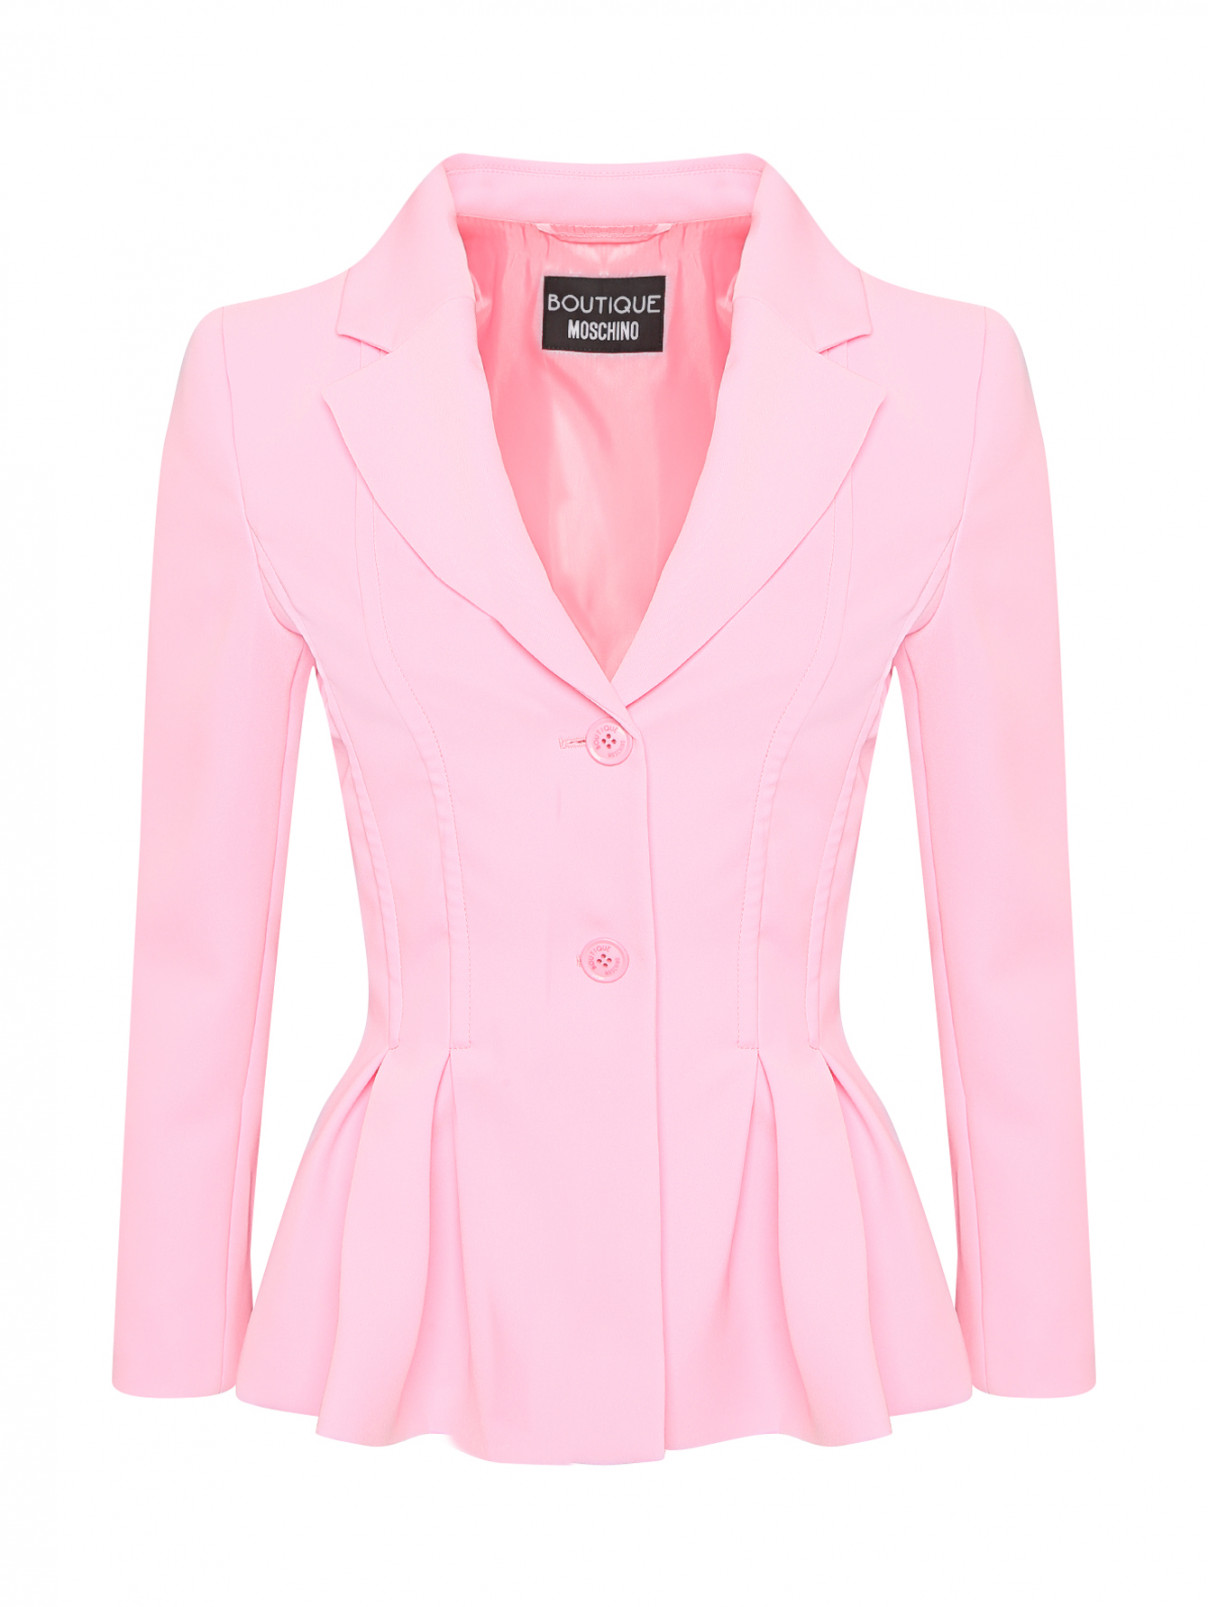 Жакет с защипами Moschino Boutique  –  Общий вид  – Цвет:  Розовый